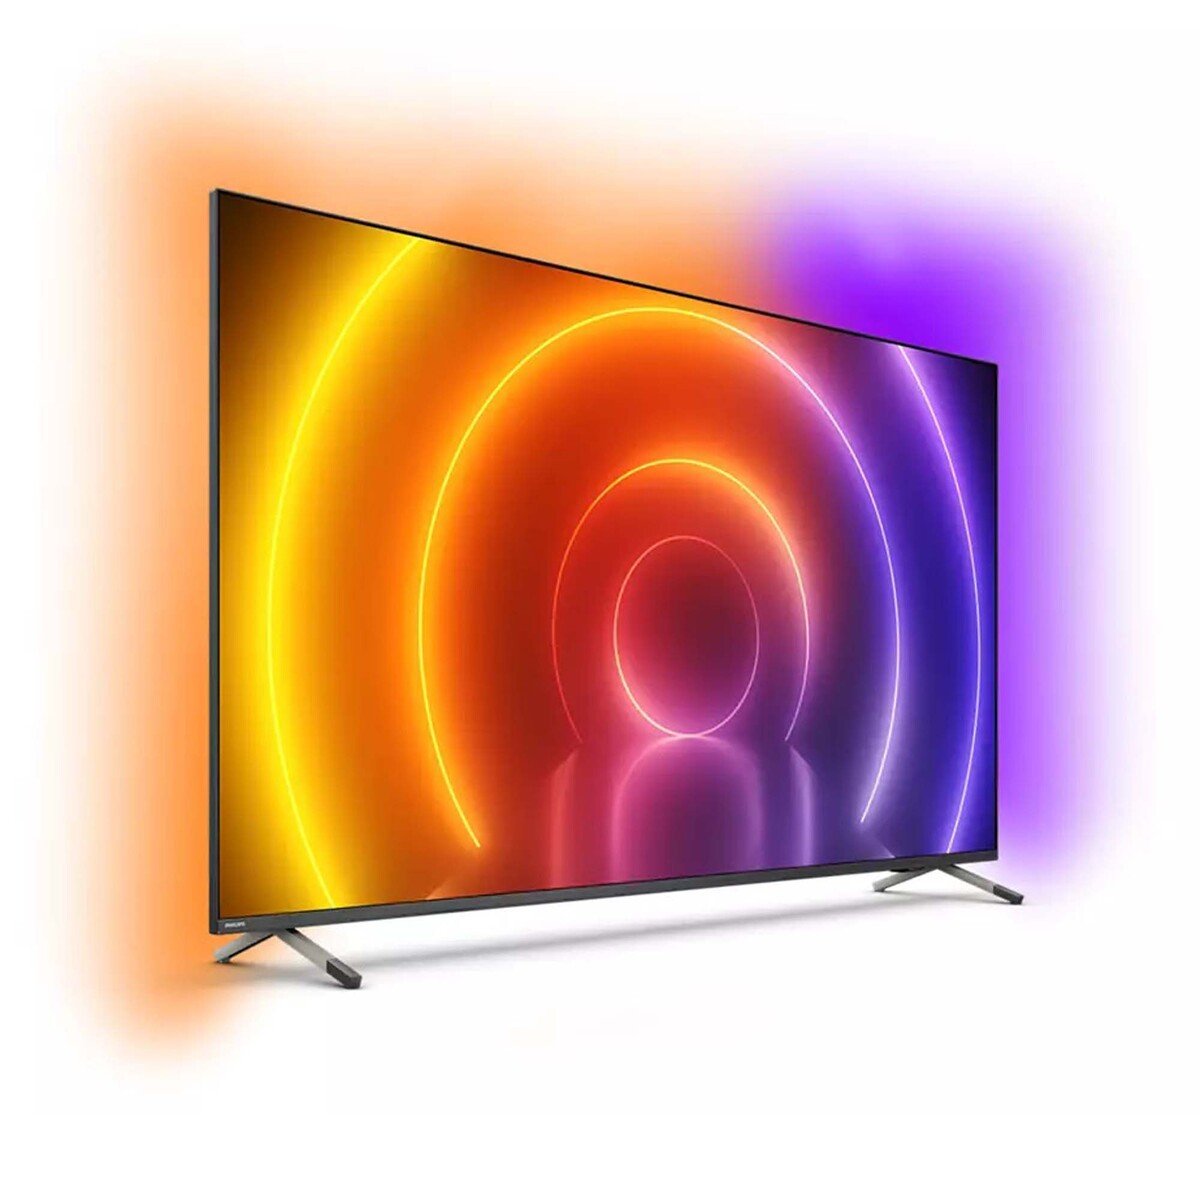 فيليبس تلفاز LED ذكي 4K دقة فائقة سلسلة 8500 50 بوصة، 50PUT8516/56